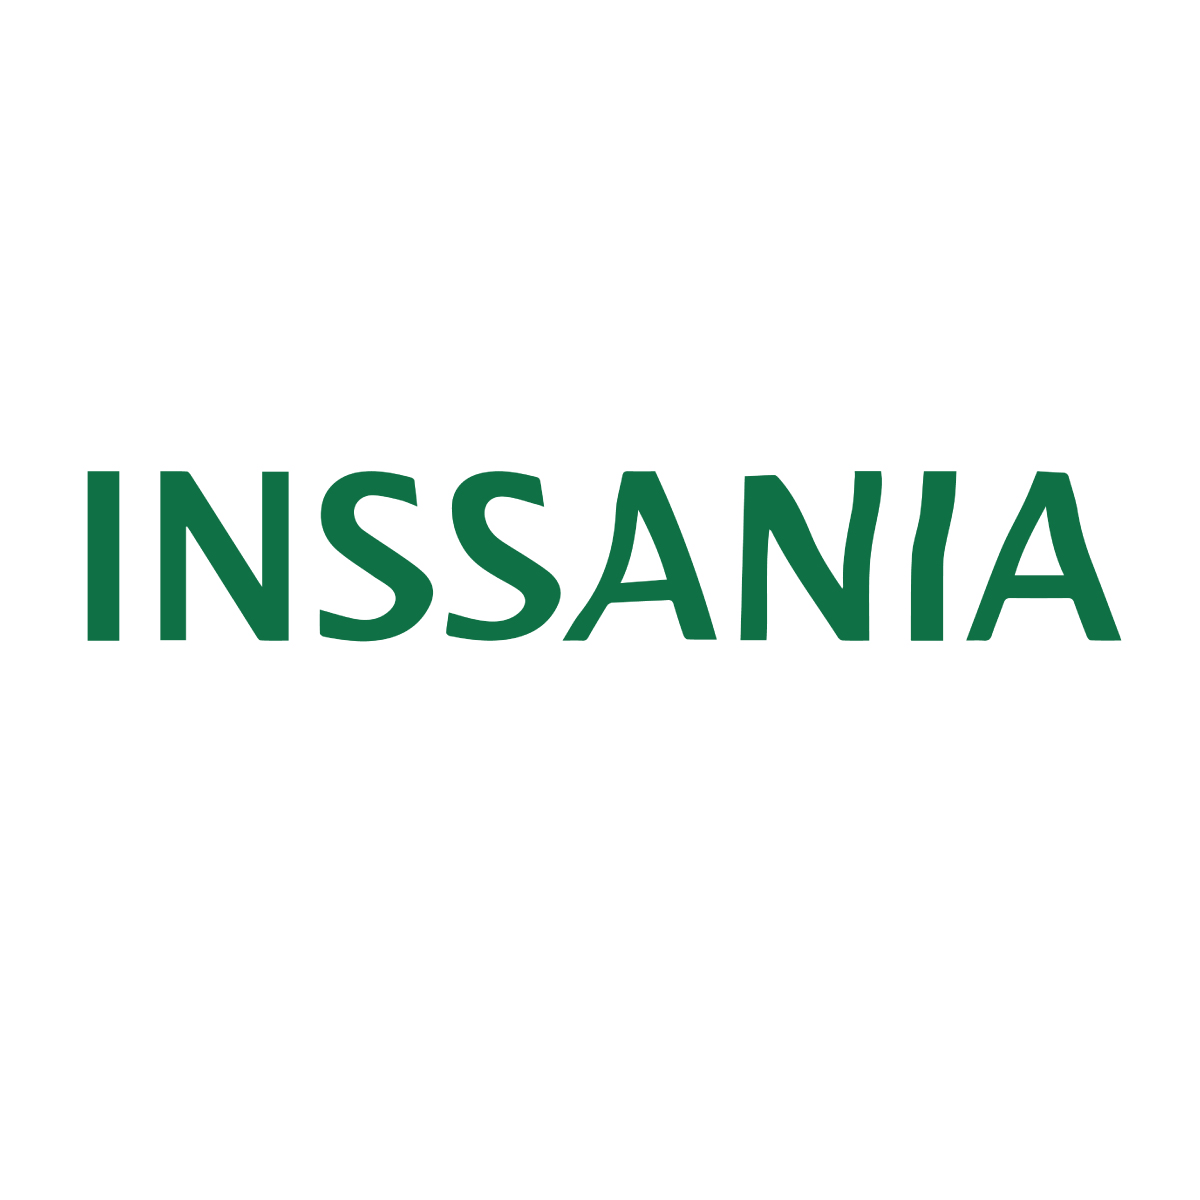 Inssania